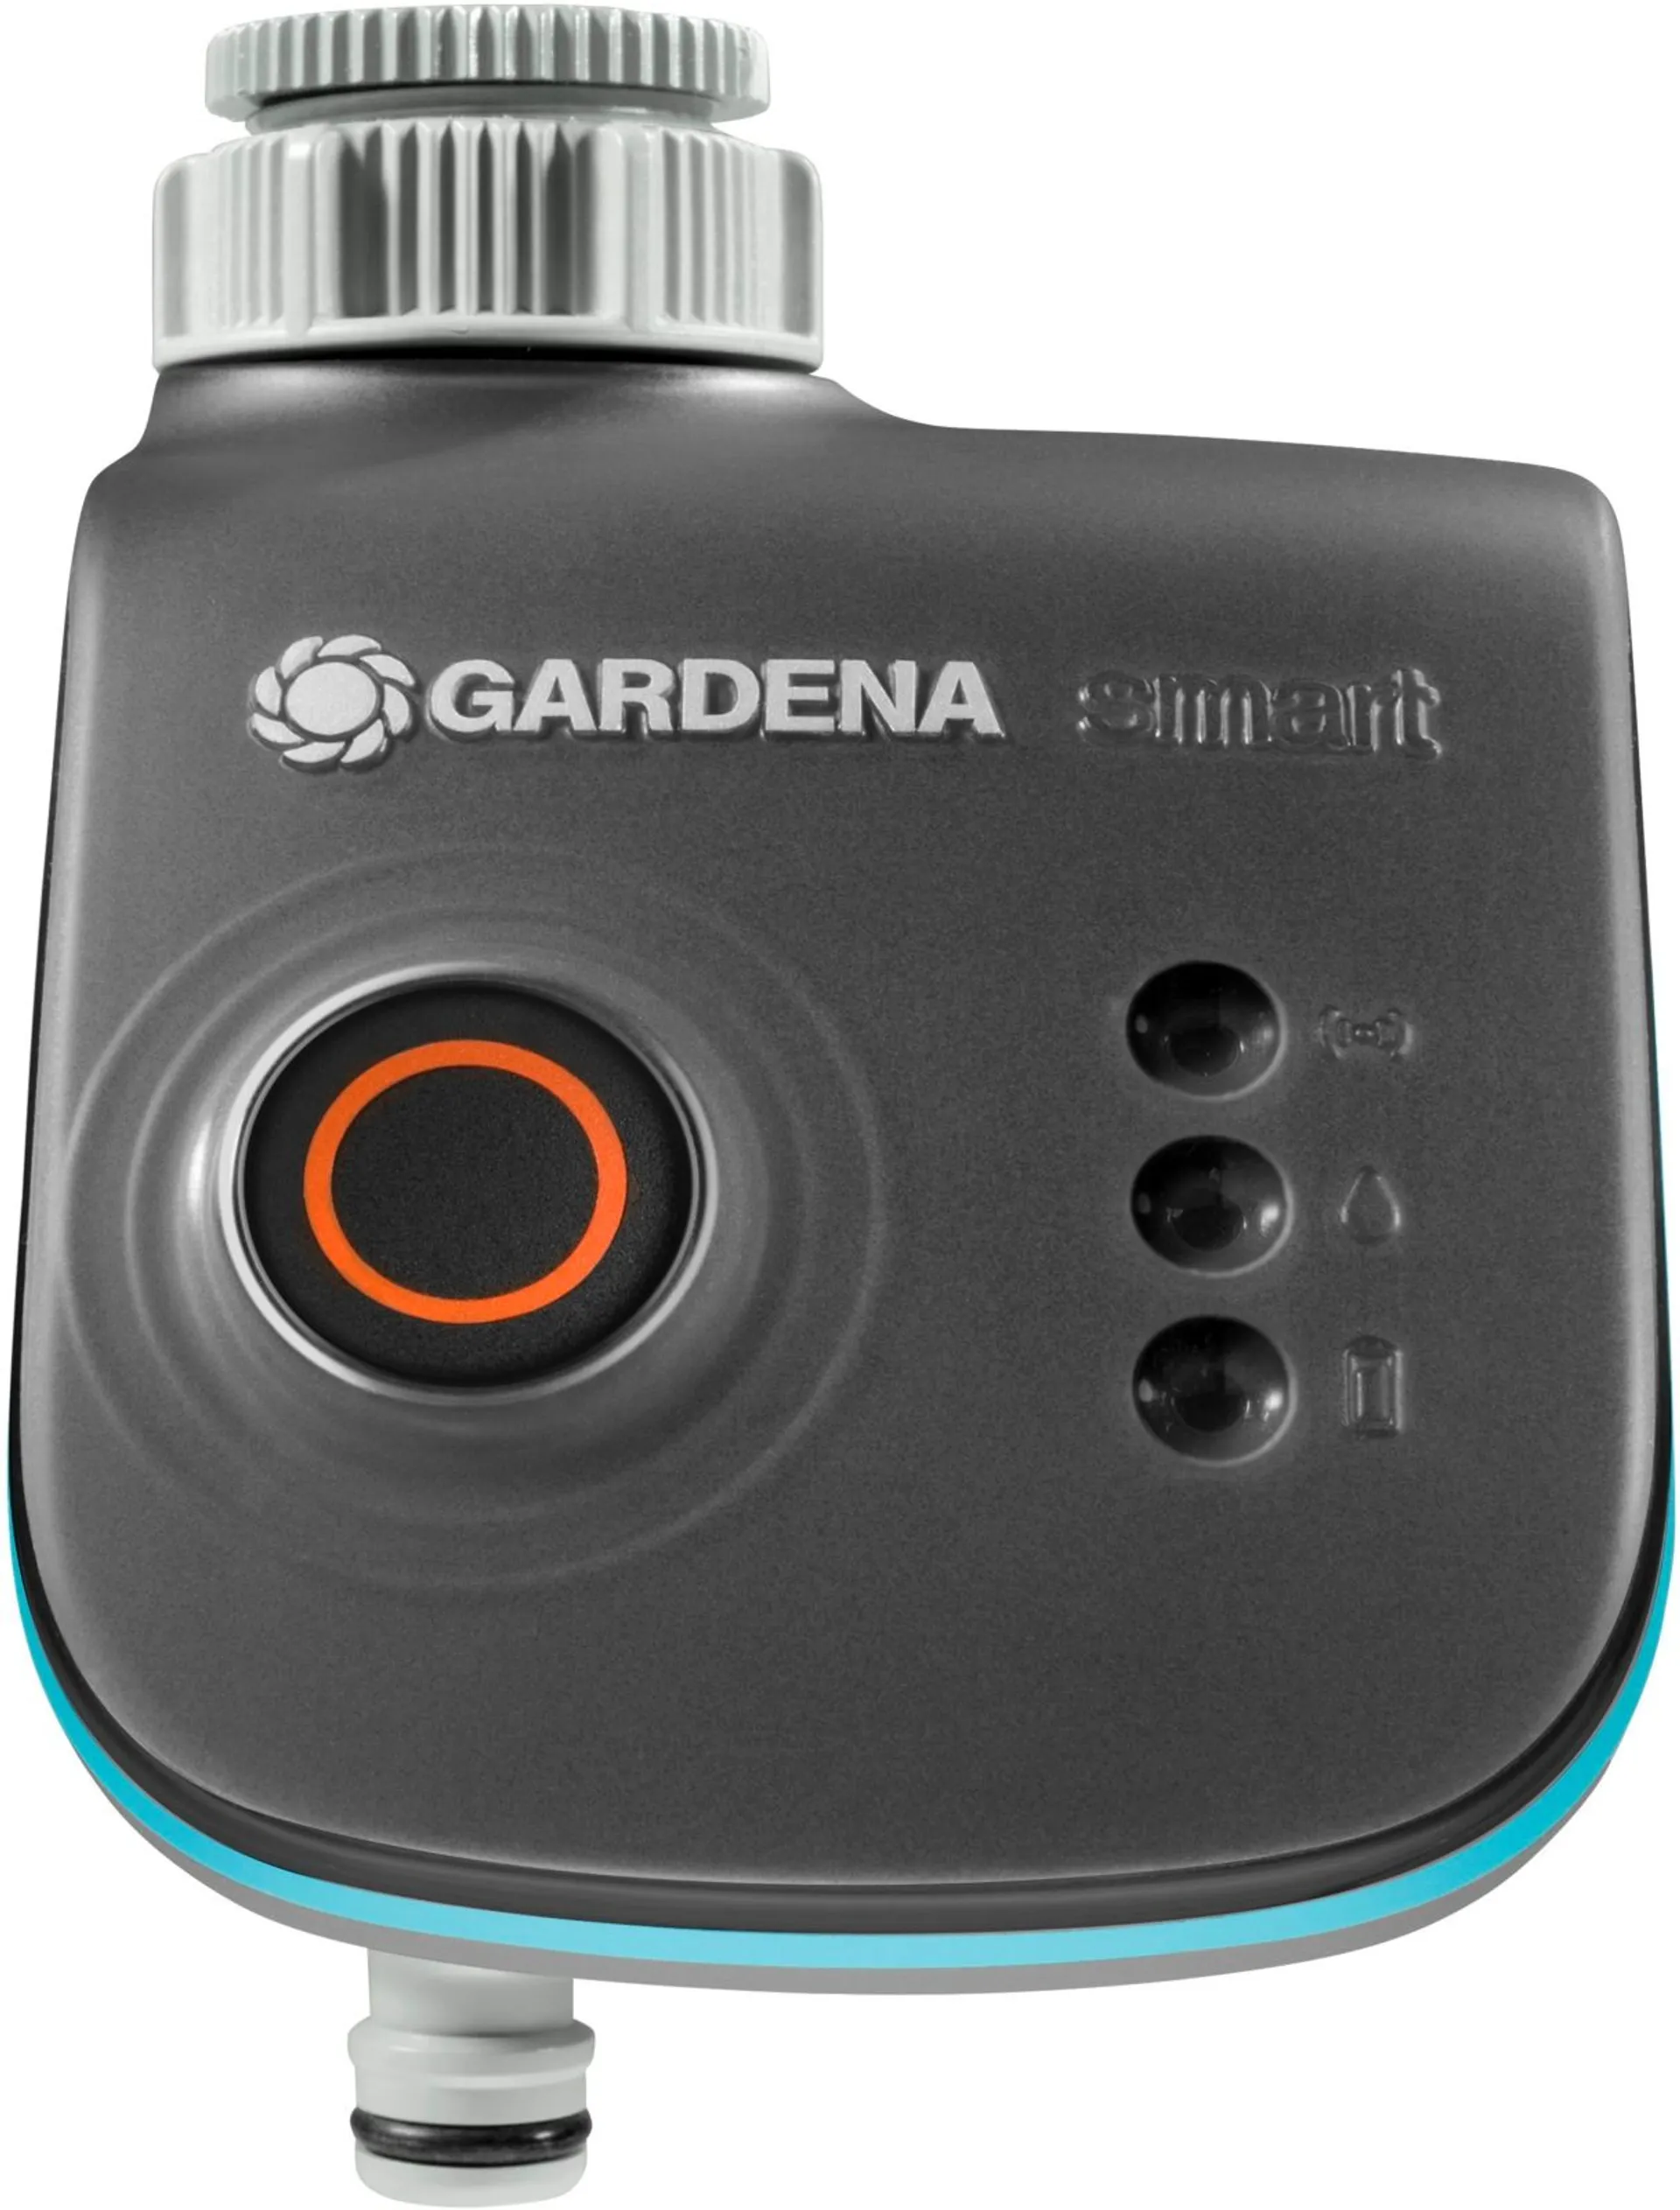 Gardena Smart Water Control, automaattiseen kastelun ohjaamiseen - 2